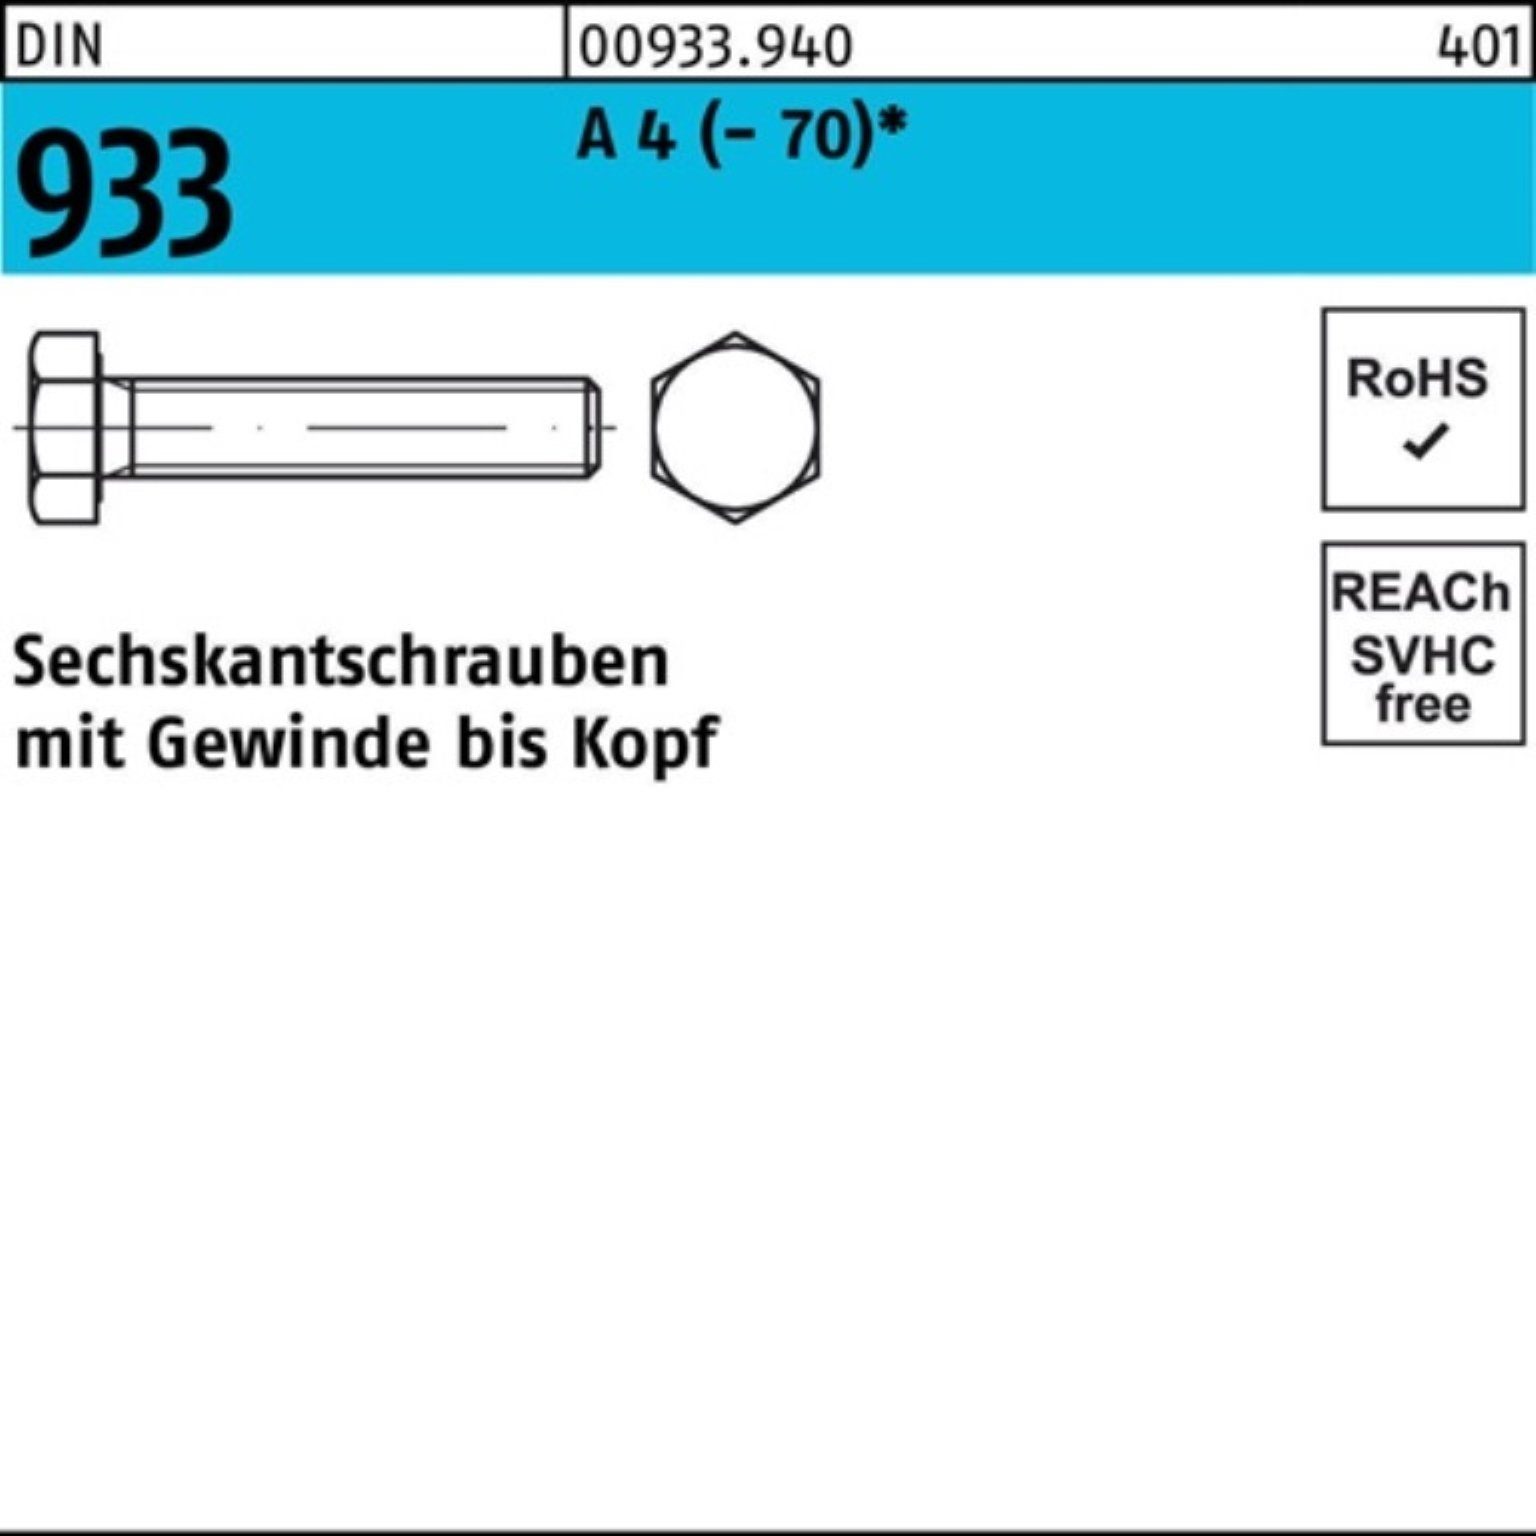 Reyher Sechskantschraube 100er D DIN Stück 120 Sechskantschraube 933 A Pack (70) VG 1 4 M16x